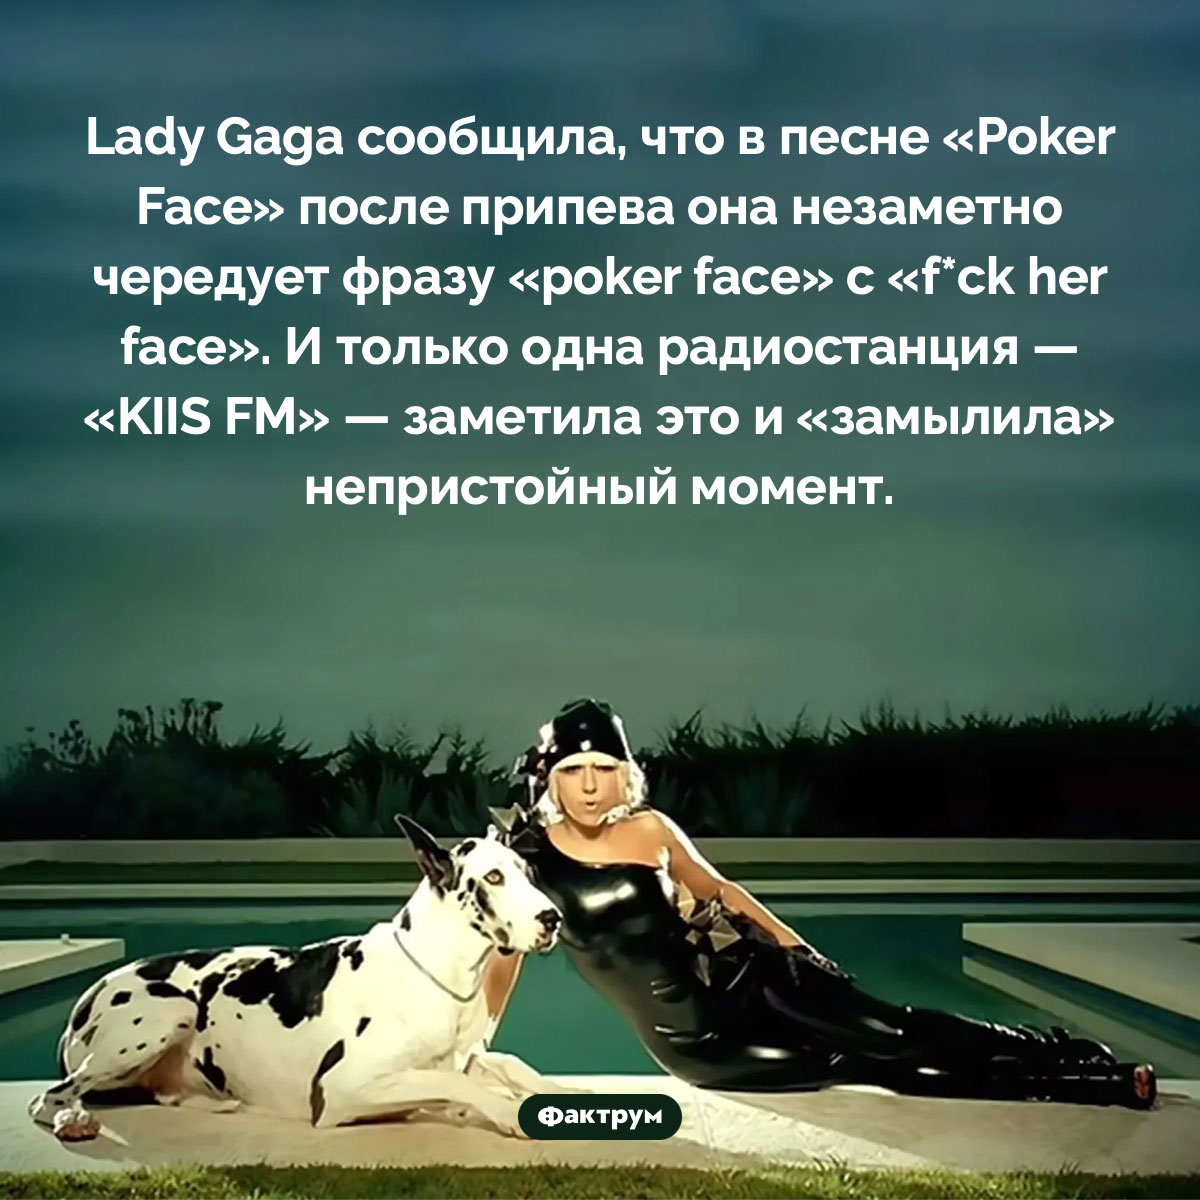 Lady Gaga в песне «Poker Face» поёт «f*ck her face». Lady Gaga сообщила, что в песне «Poker Face» после припева она незаметно чередует фразу «poker face» с «f*ck her face». И только одна радиостанция — «KIIS FM» — заметила это и «замылила» непристойный момент.